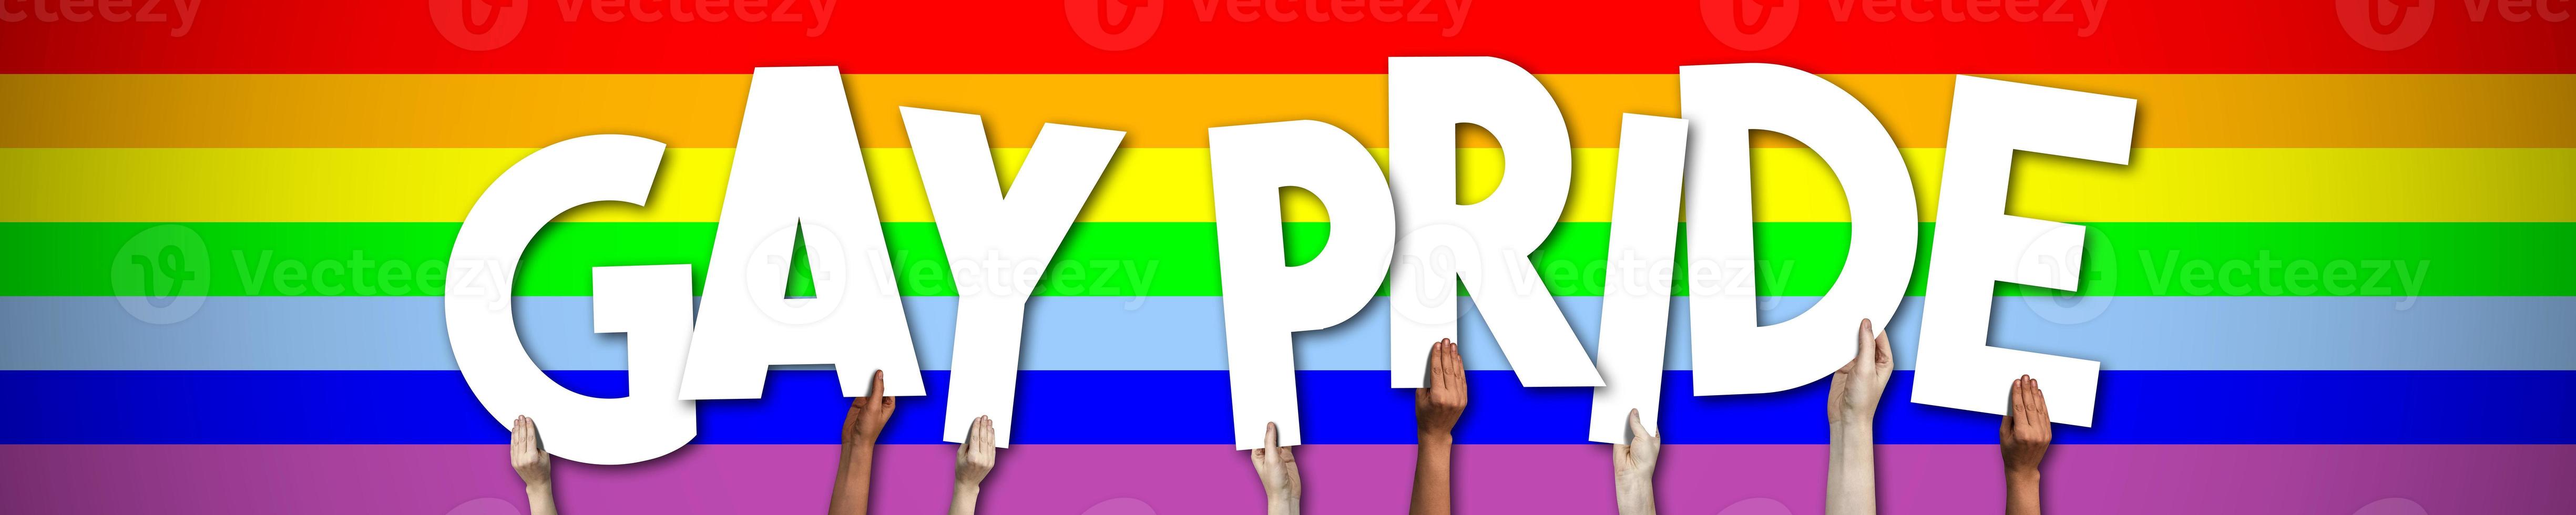 gay orgullo bandera - humano manos participación vistoso letras foto